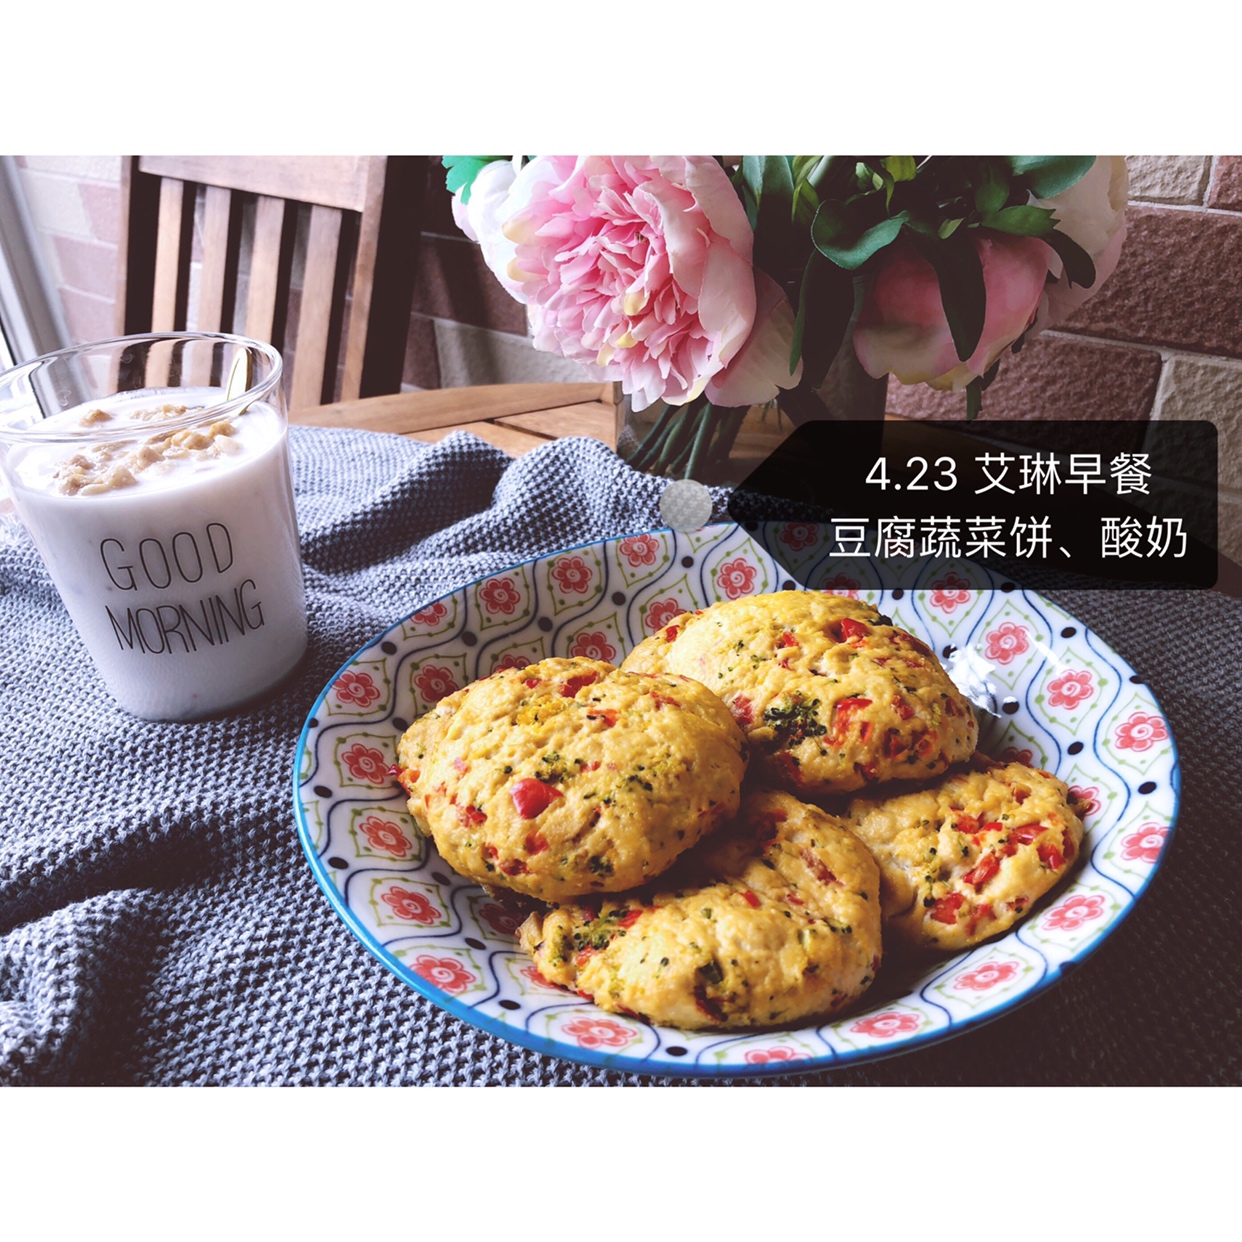 豆腐蔬菜饼 低卡健康~补充蛋白质